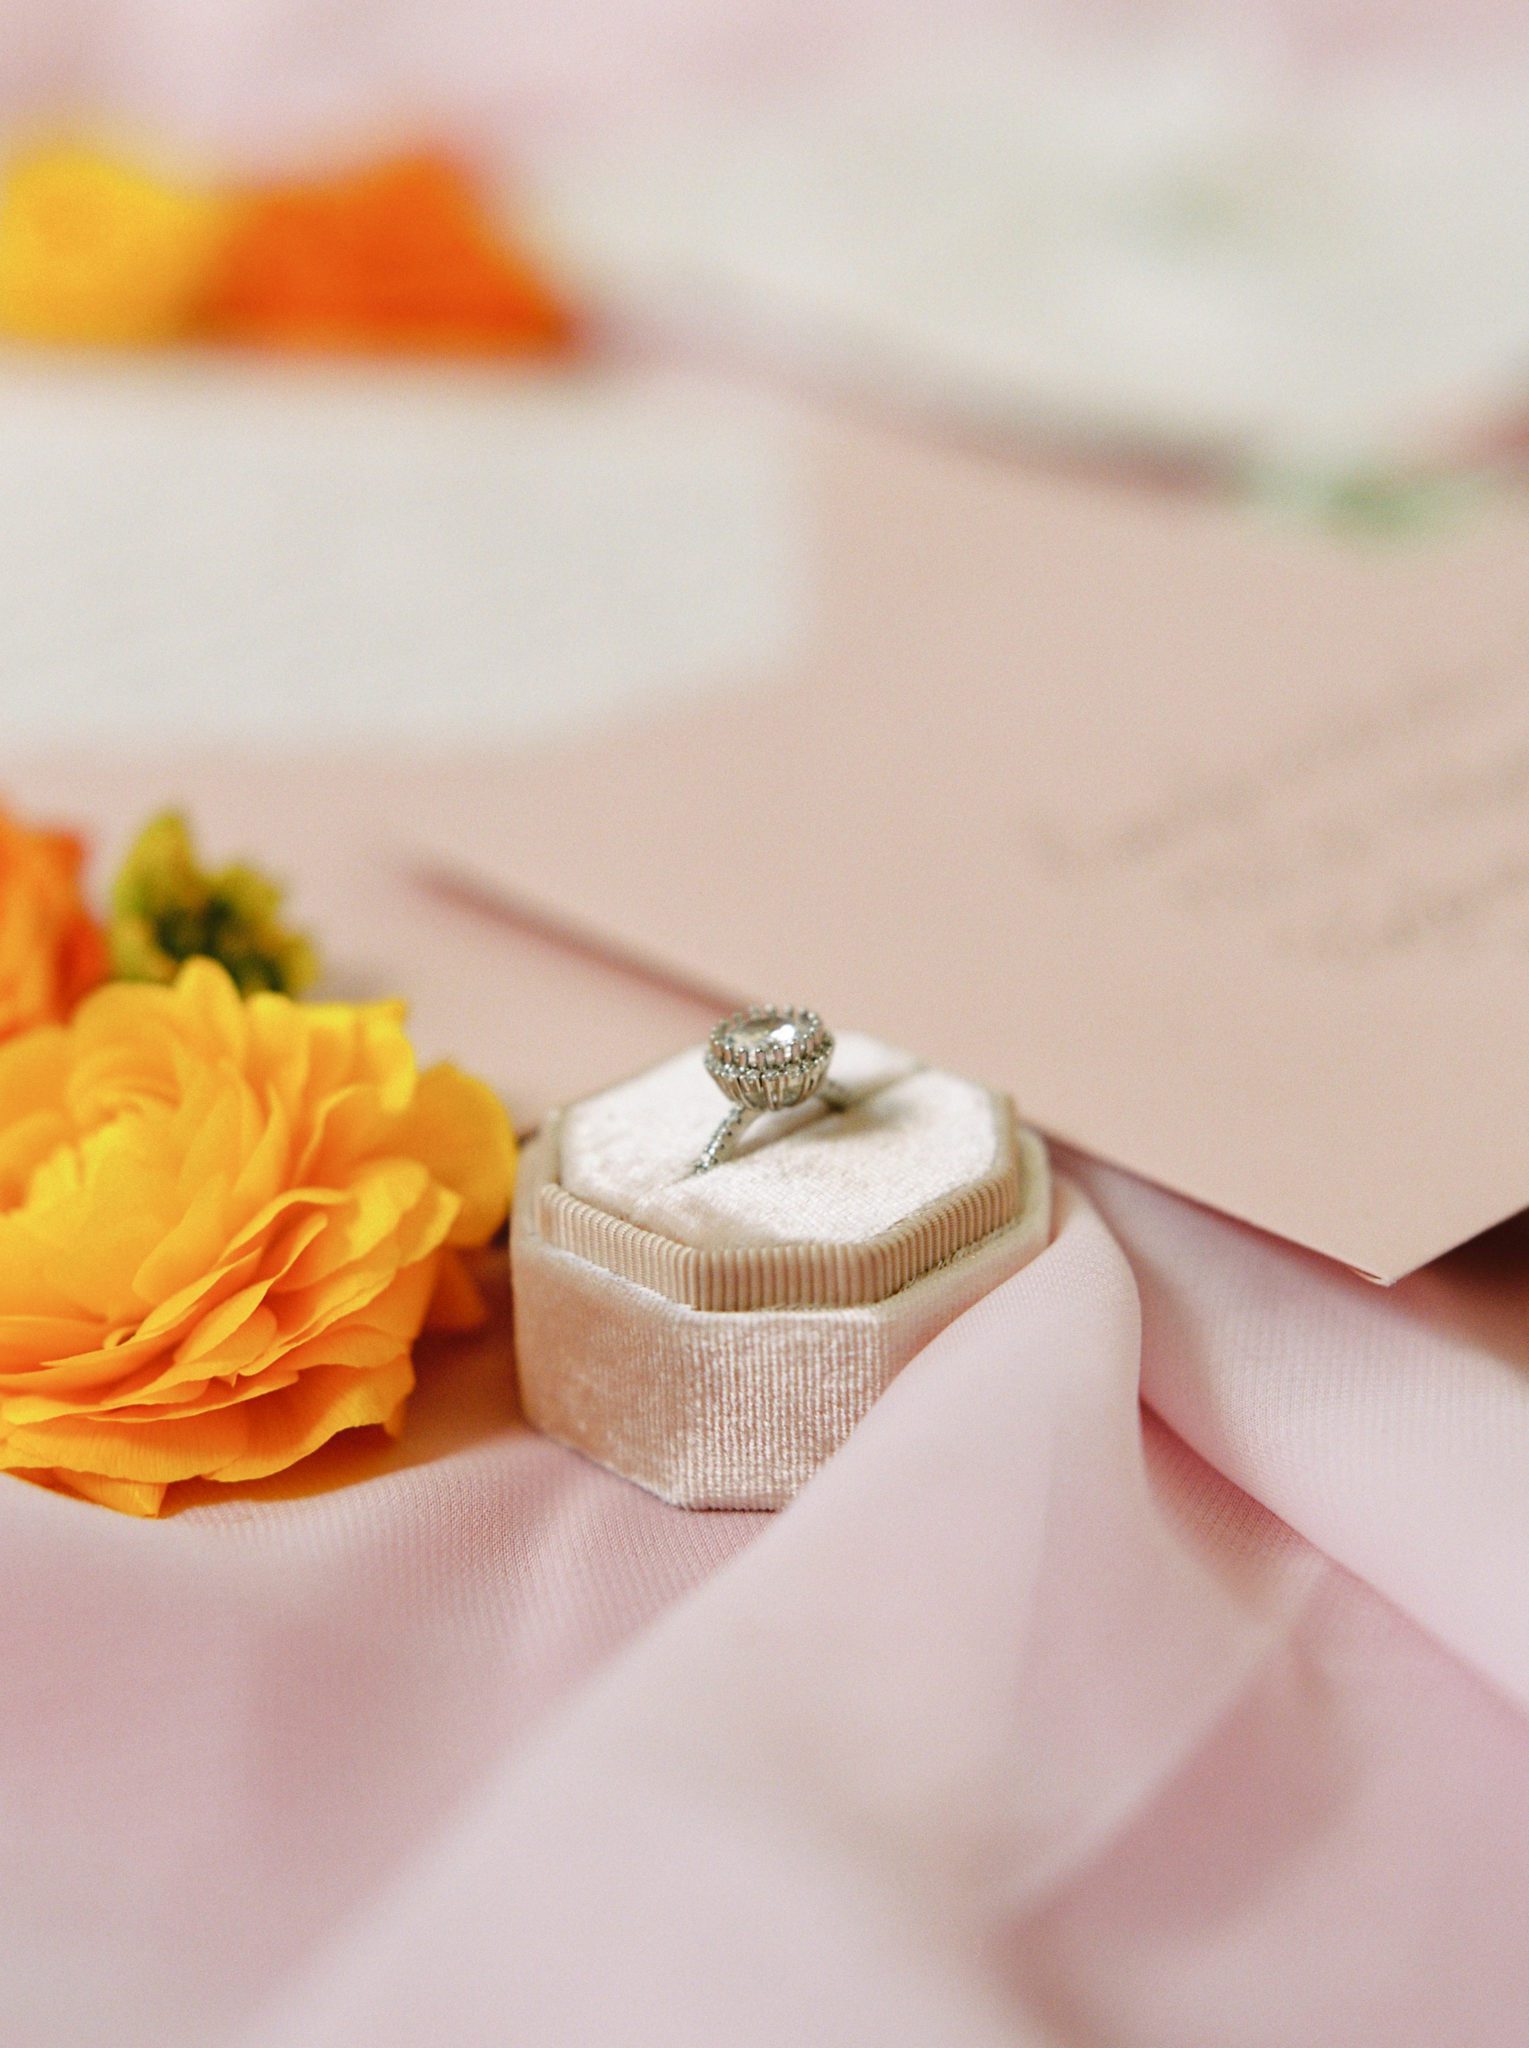 Engagement ring in pink blush ring box